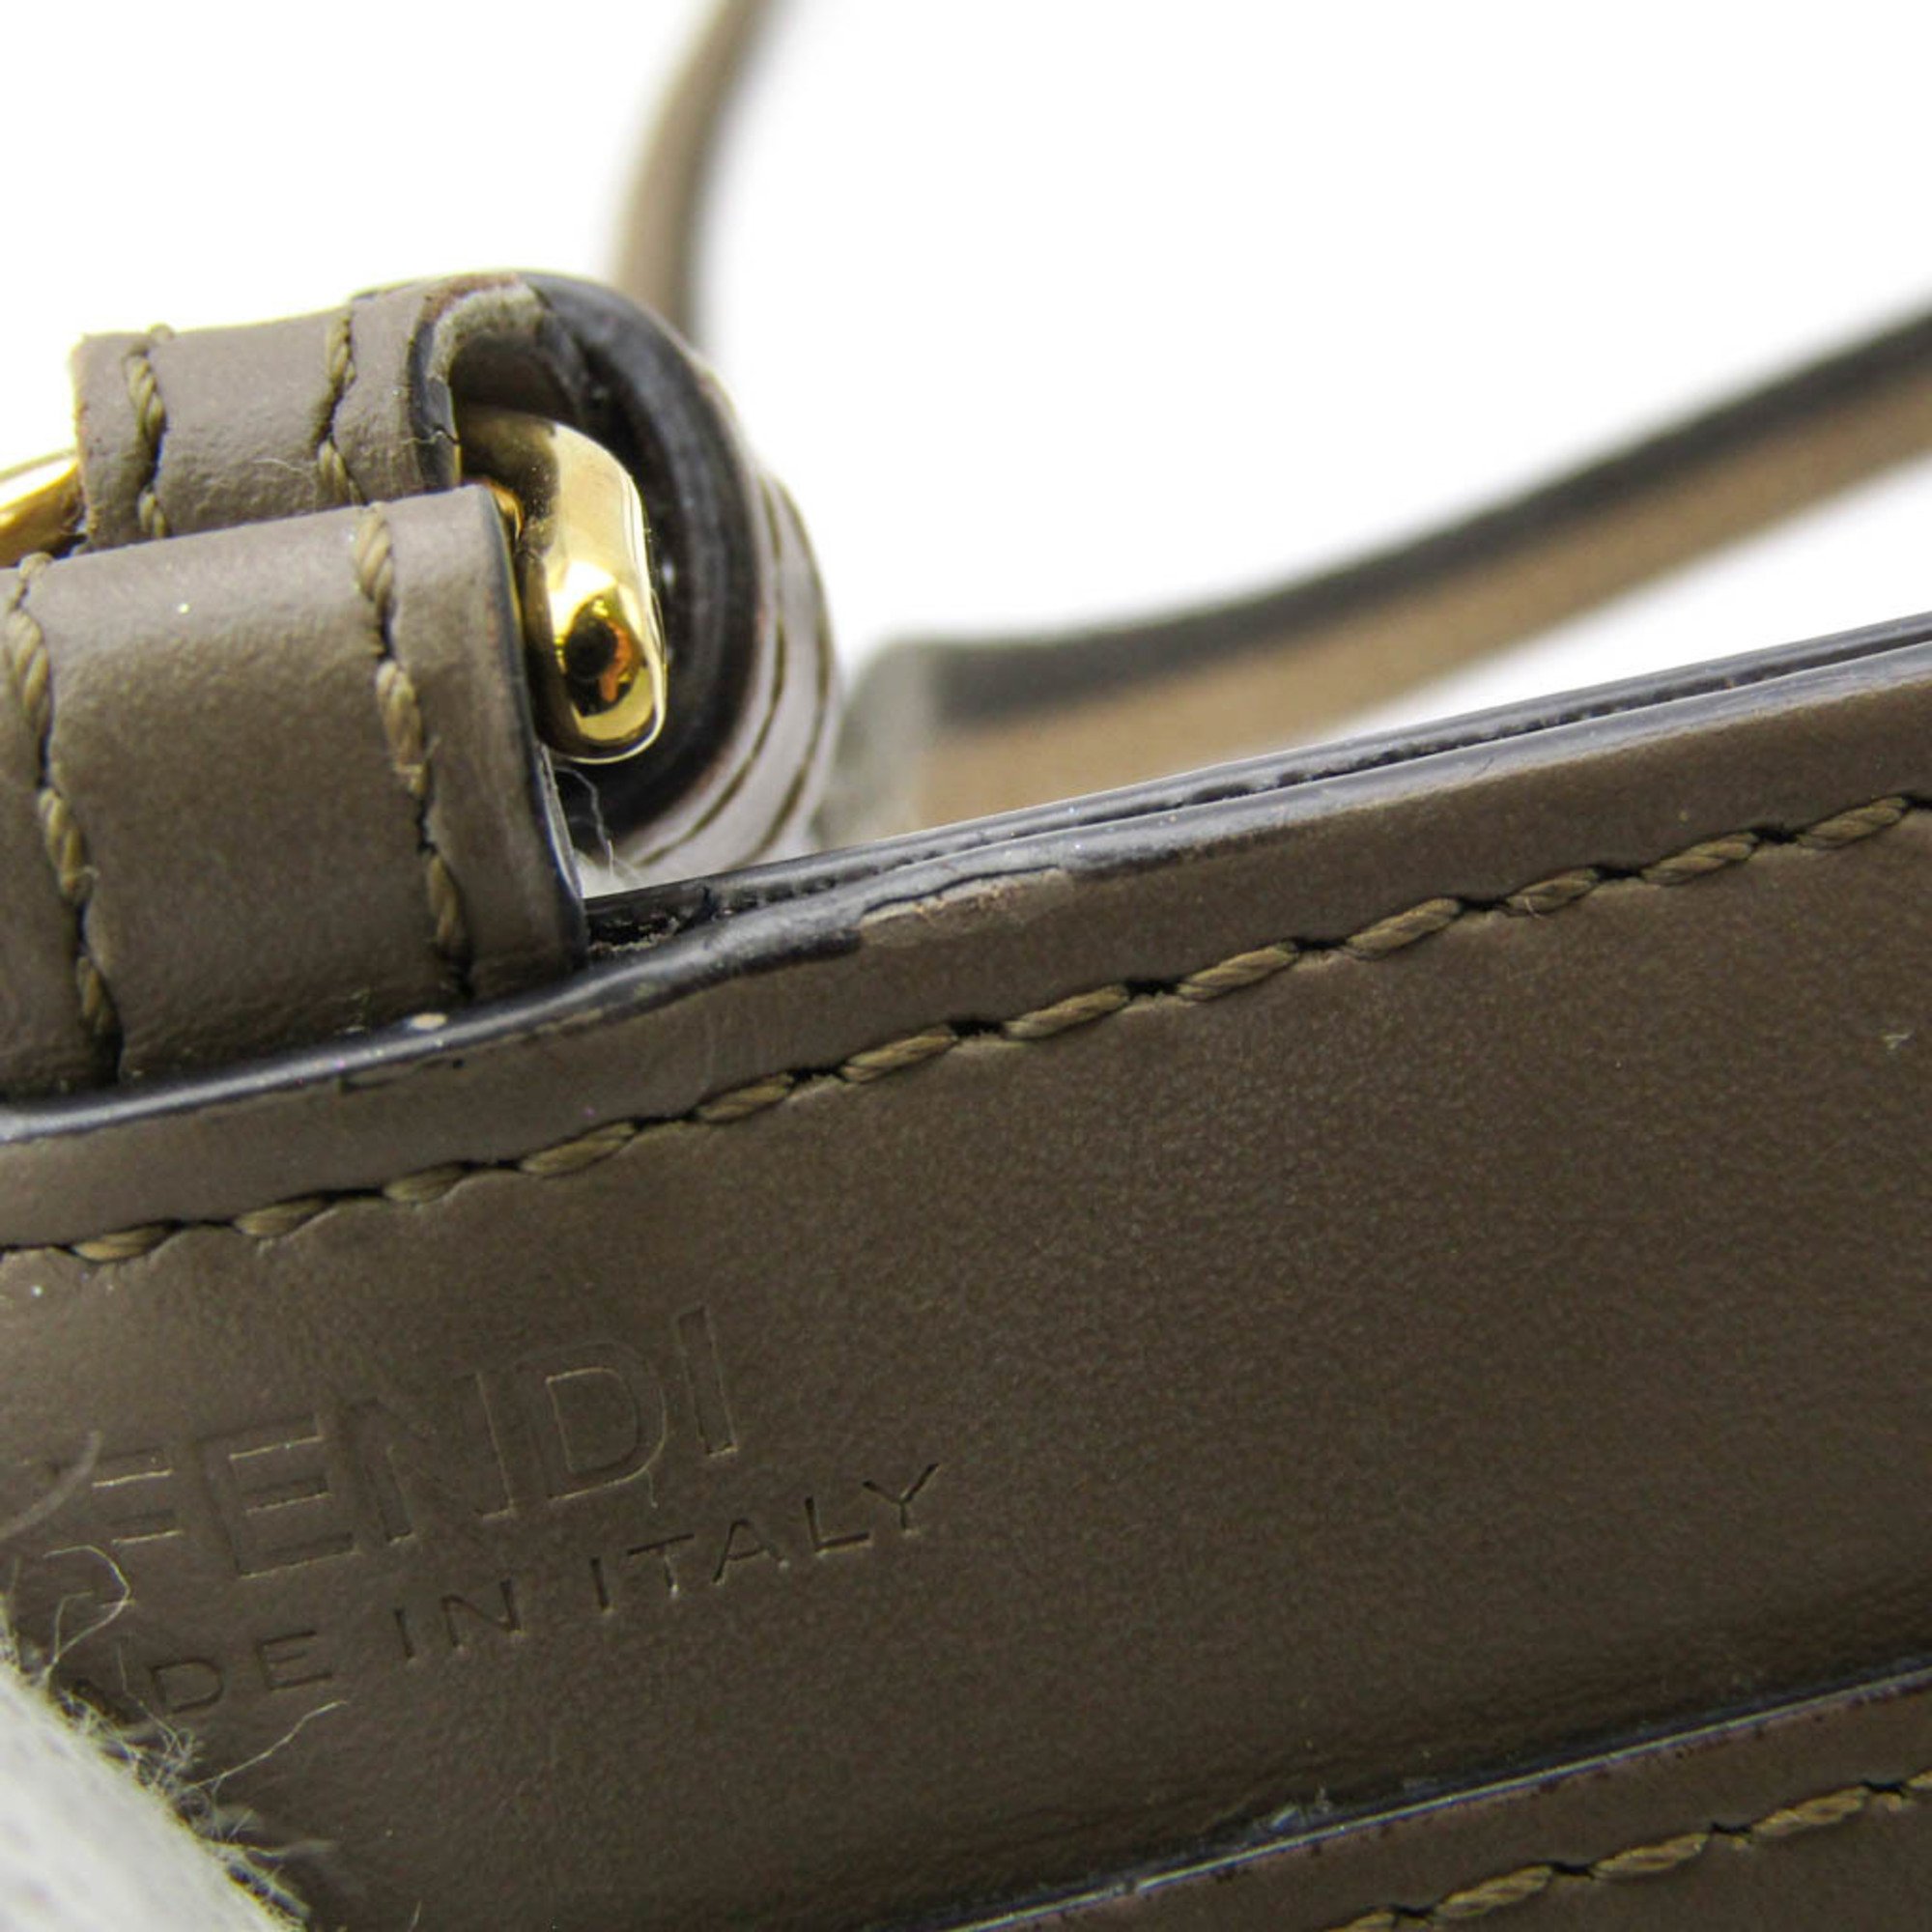 フェンディ(Fendi) ストラップ付型押しロゴ ネームカードホルダー 